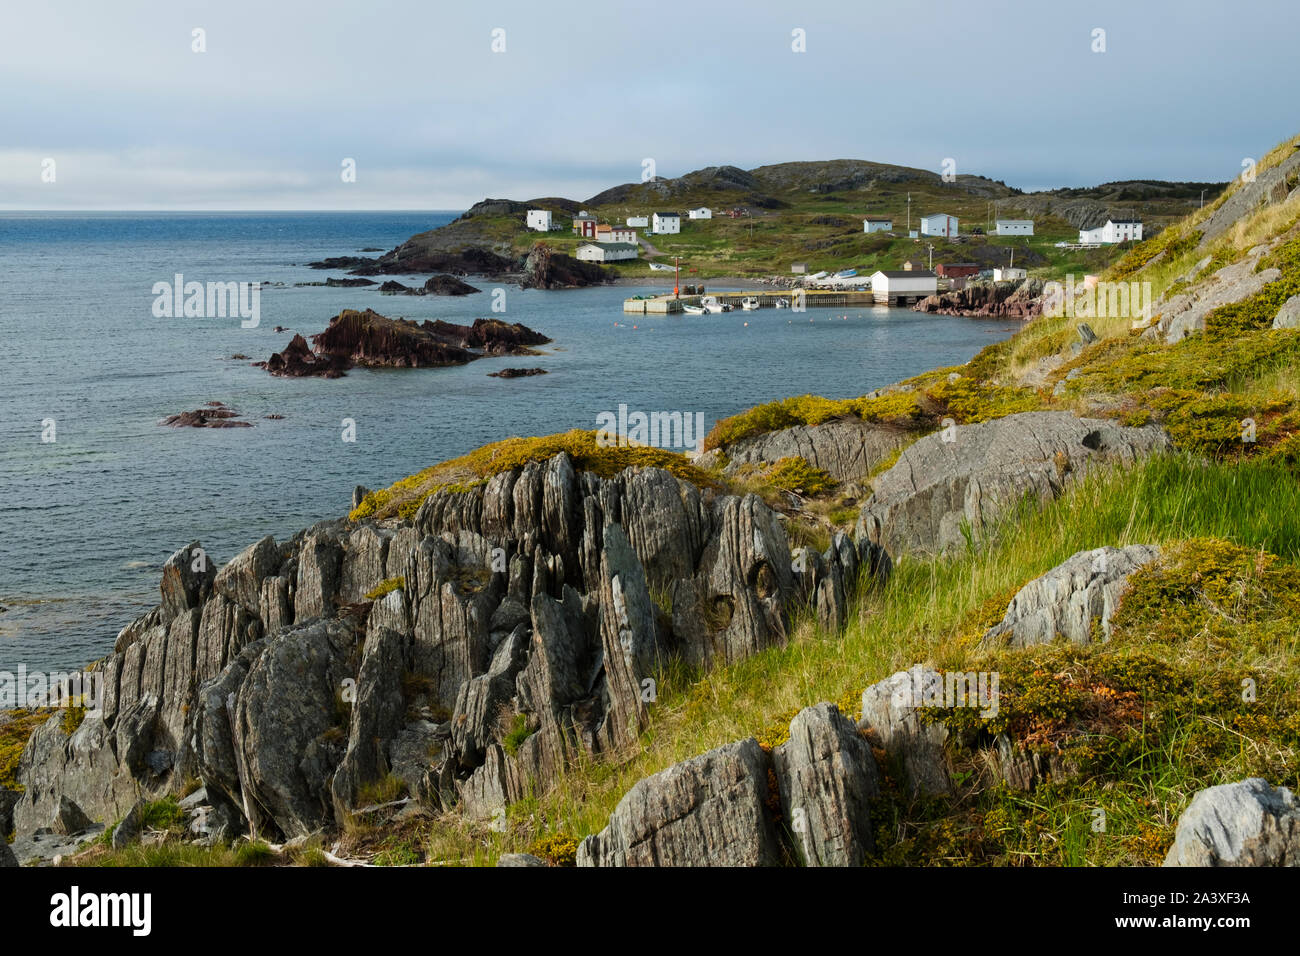 Keels, Newfoundland Stock Photo